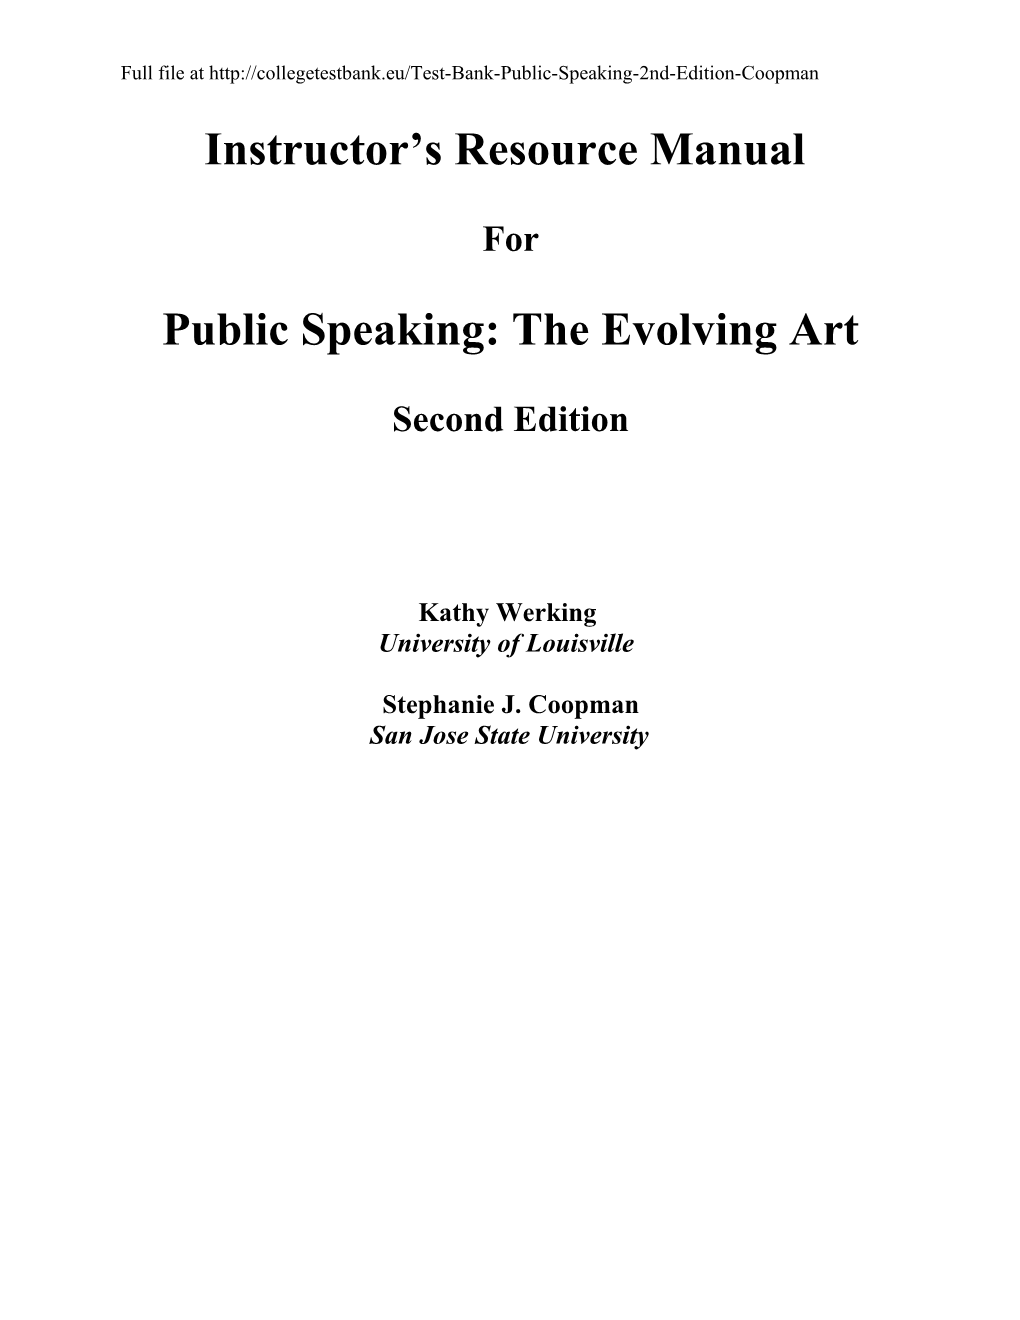 Public Speaking: the Evolving Art